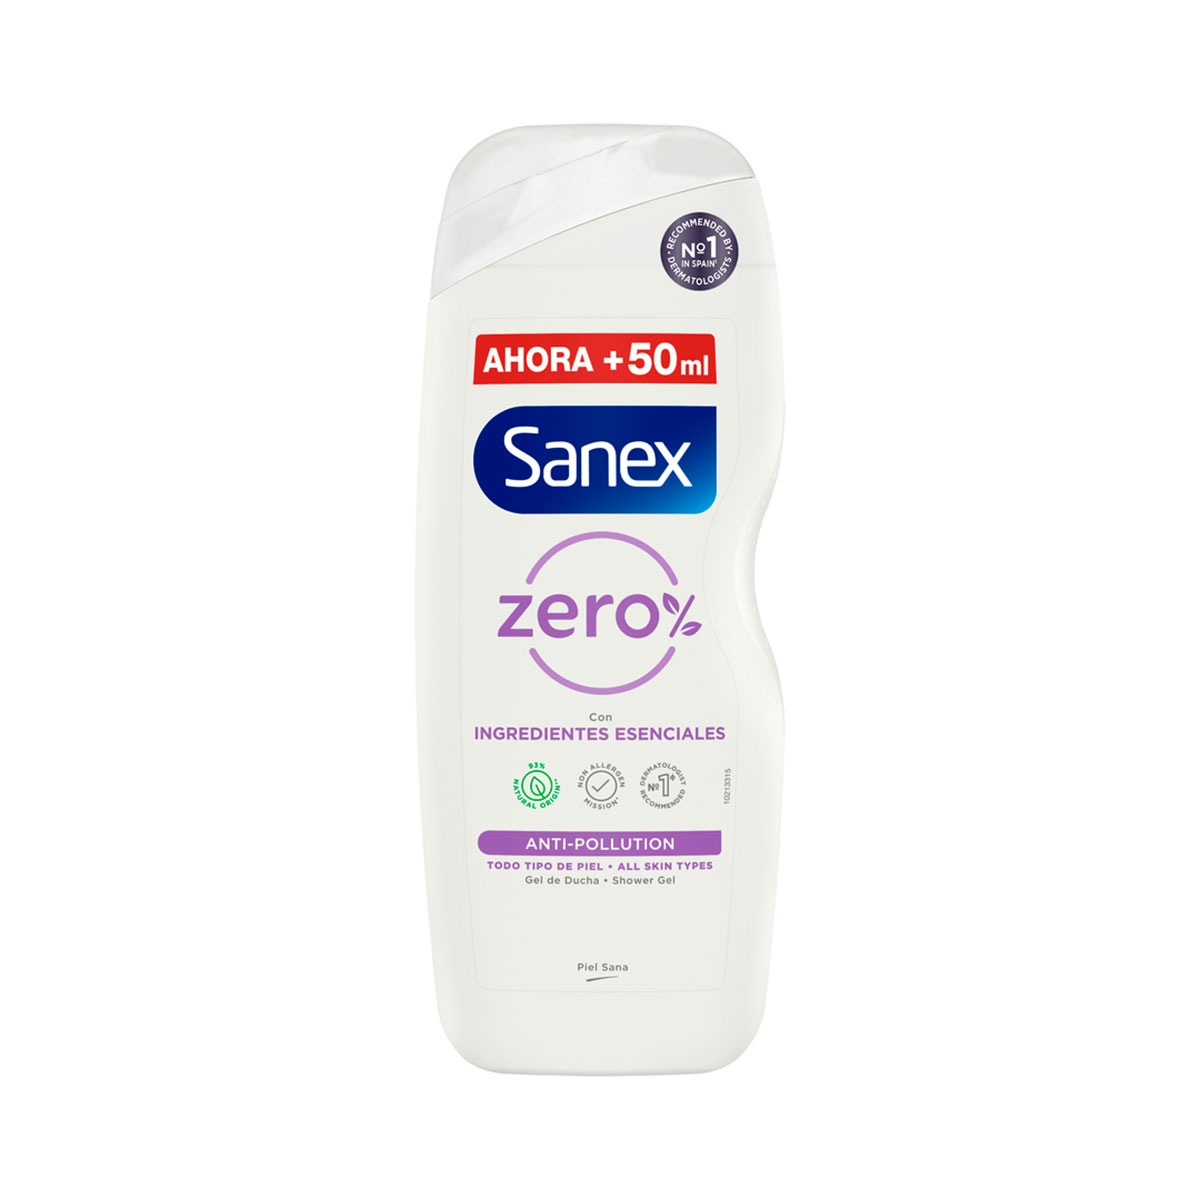 Gel Sanex zero% antipolución 600ml